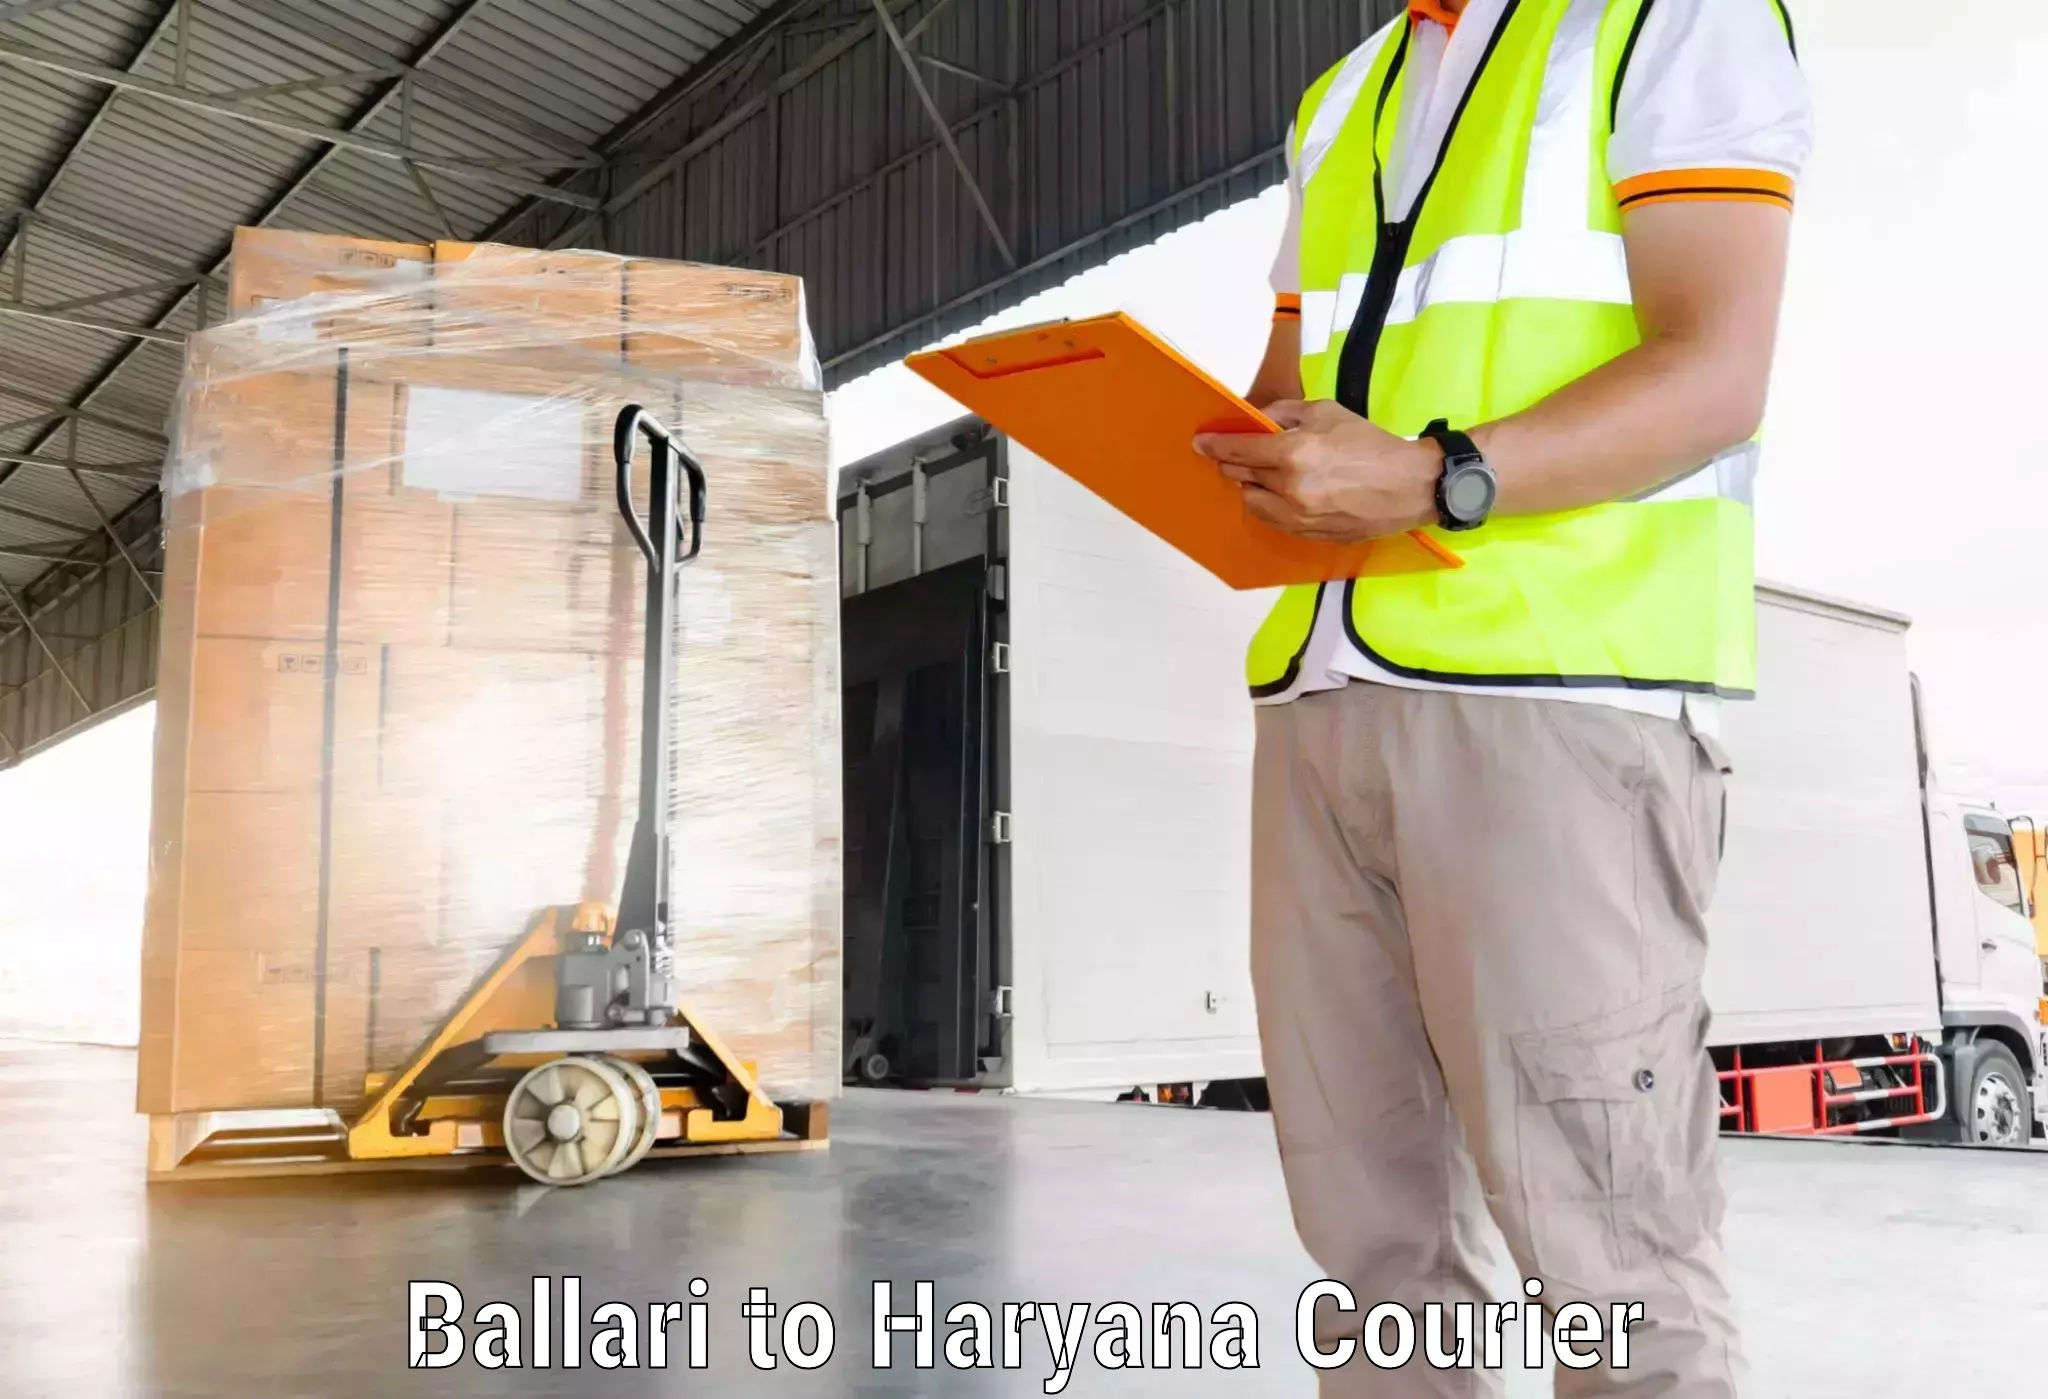 Express logistics service Ballari to Pataudi